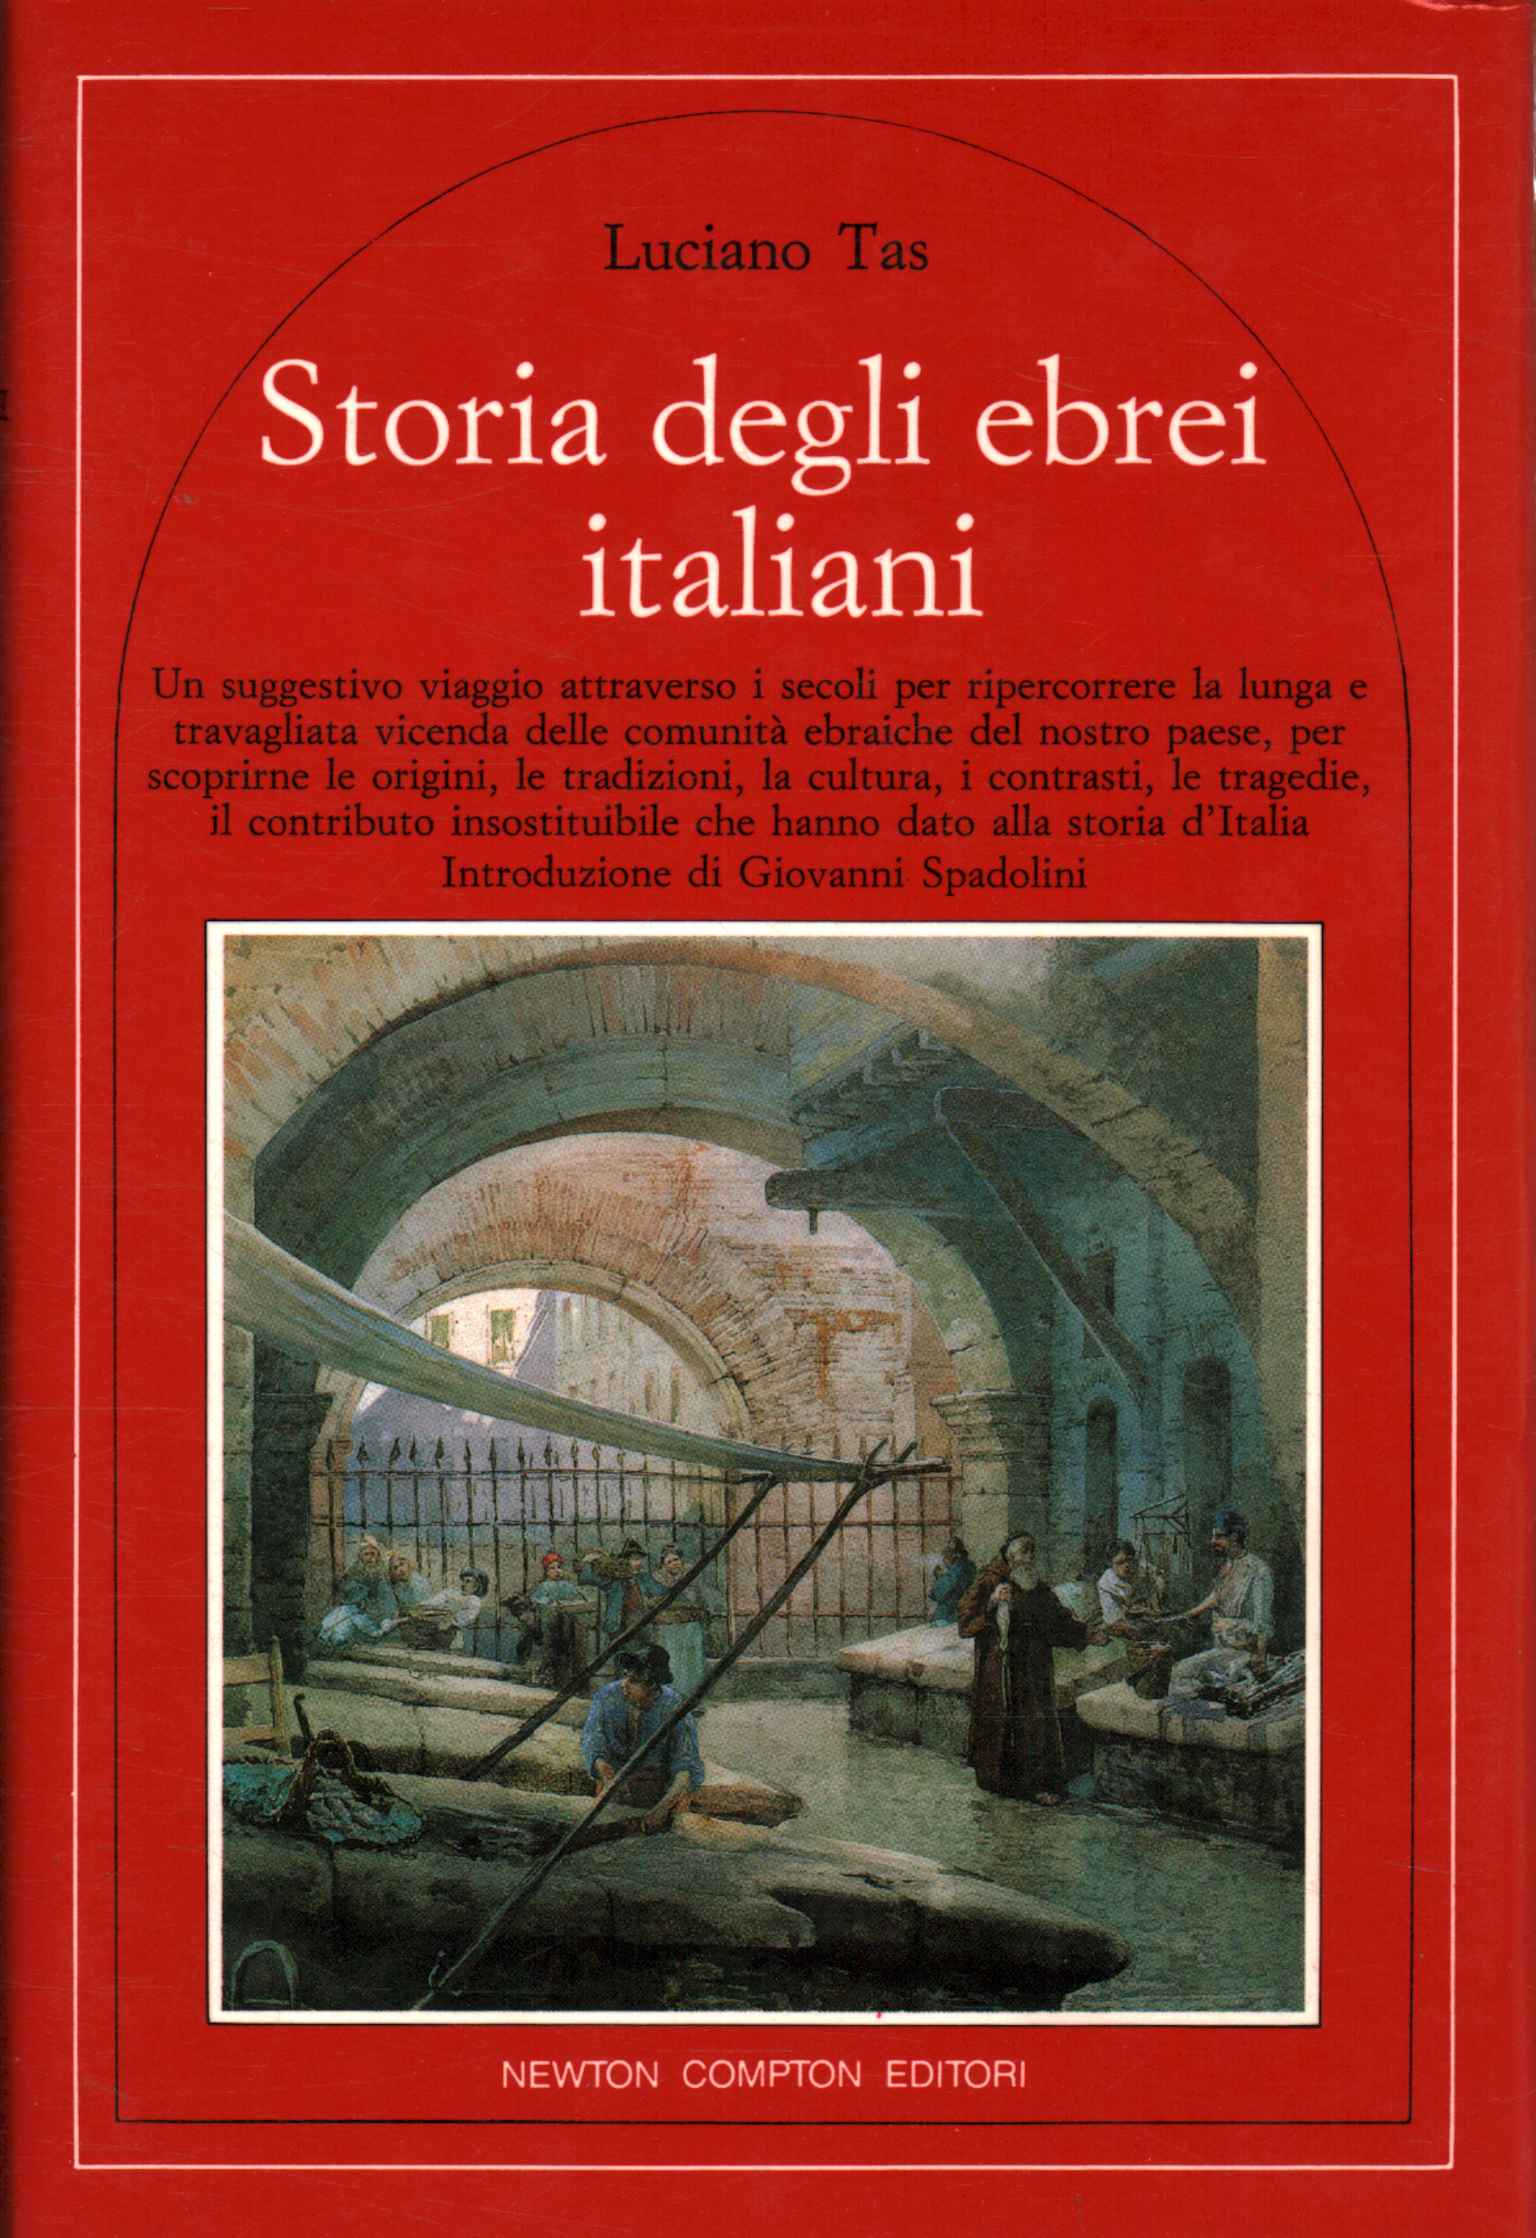 Die Geschichte der italienischen Juden